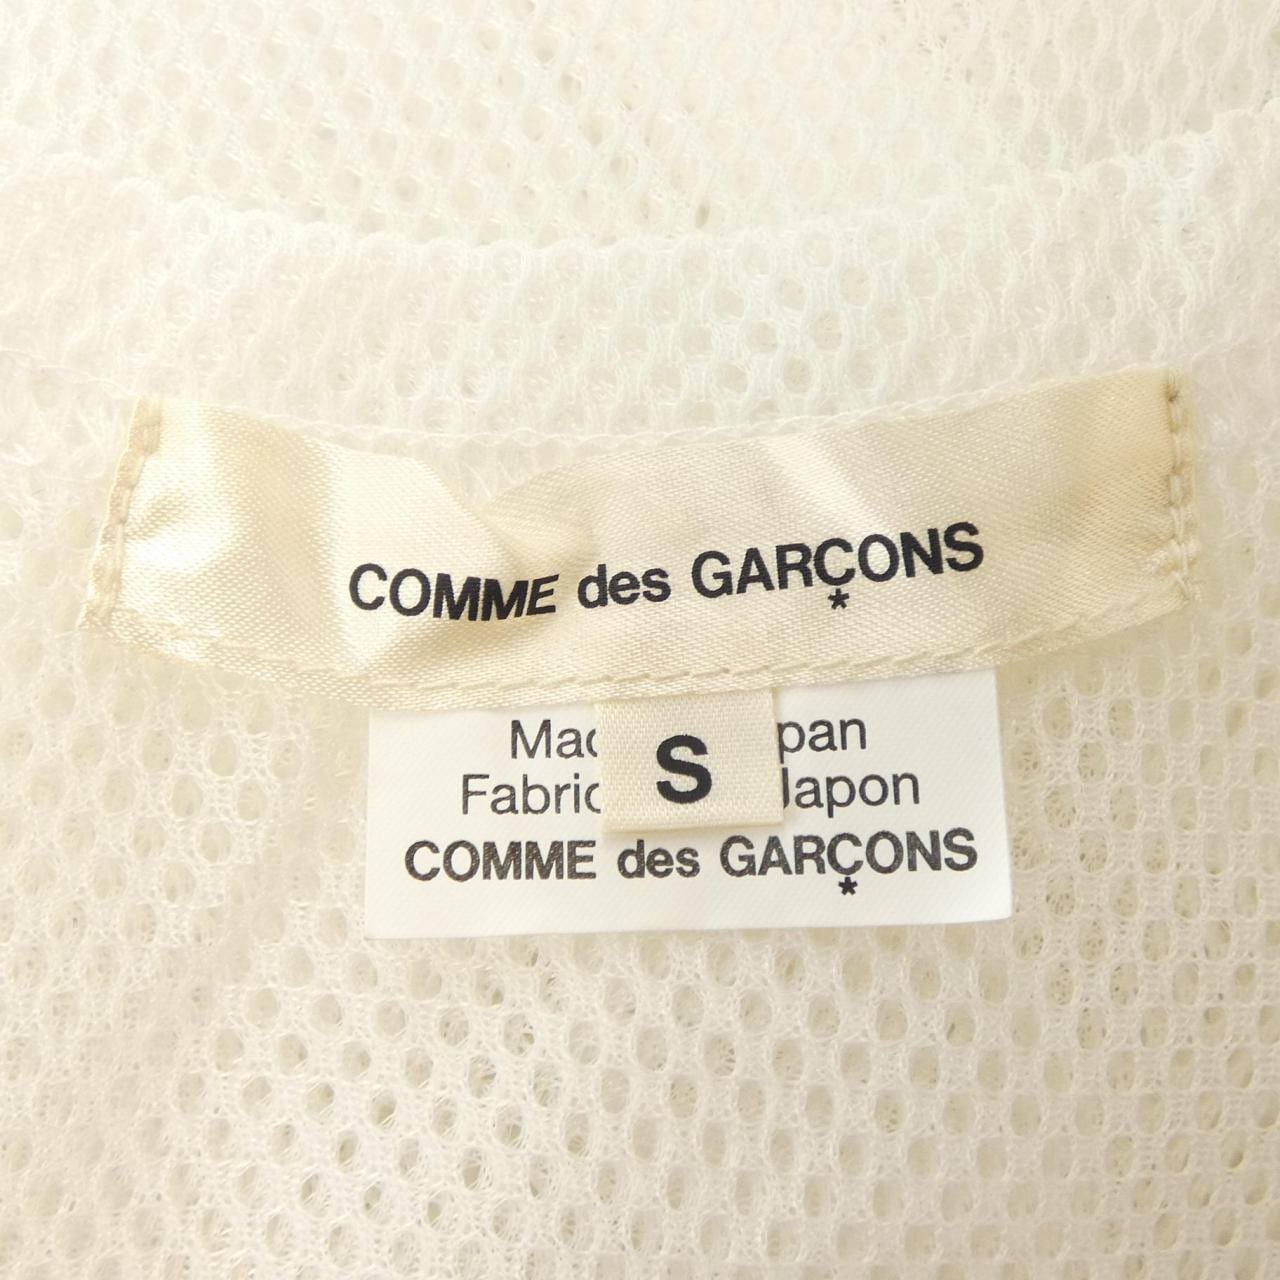 COMMME des GARCONS上衣